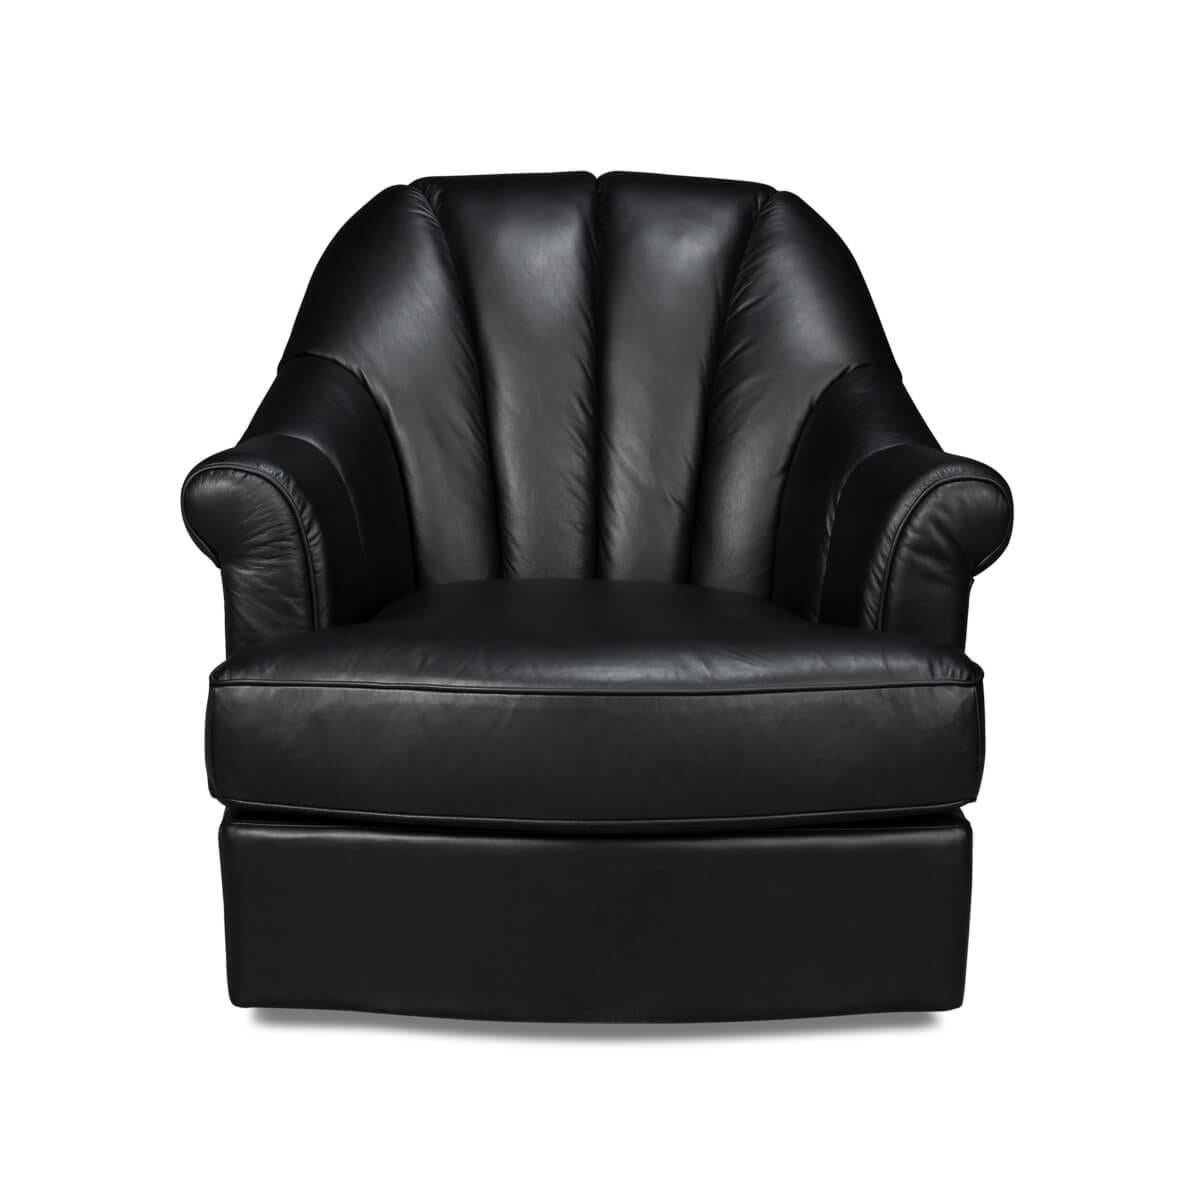 
Eine Oase der Entspannung, wo klassisches Design auf wolkengleichen Komfort trifft. Mit seinen großzügig gepolsterten, gerollten Armlehnen und dem tiefen, einladenden Sitzkissen ist dieser Sessel aus hochwertigem, vollnarbigem Leder, das Wärme und